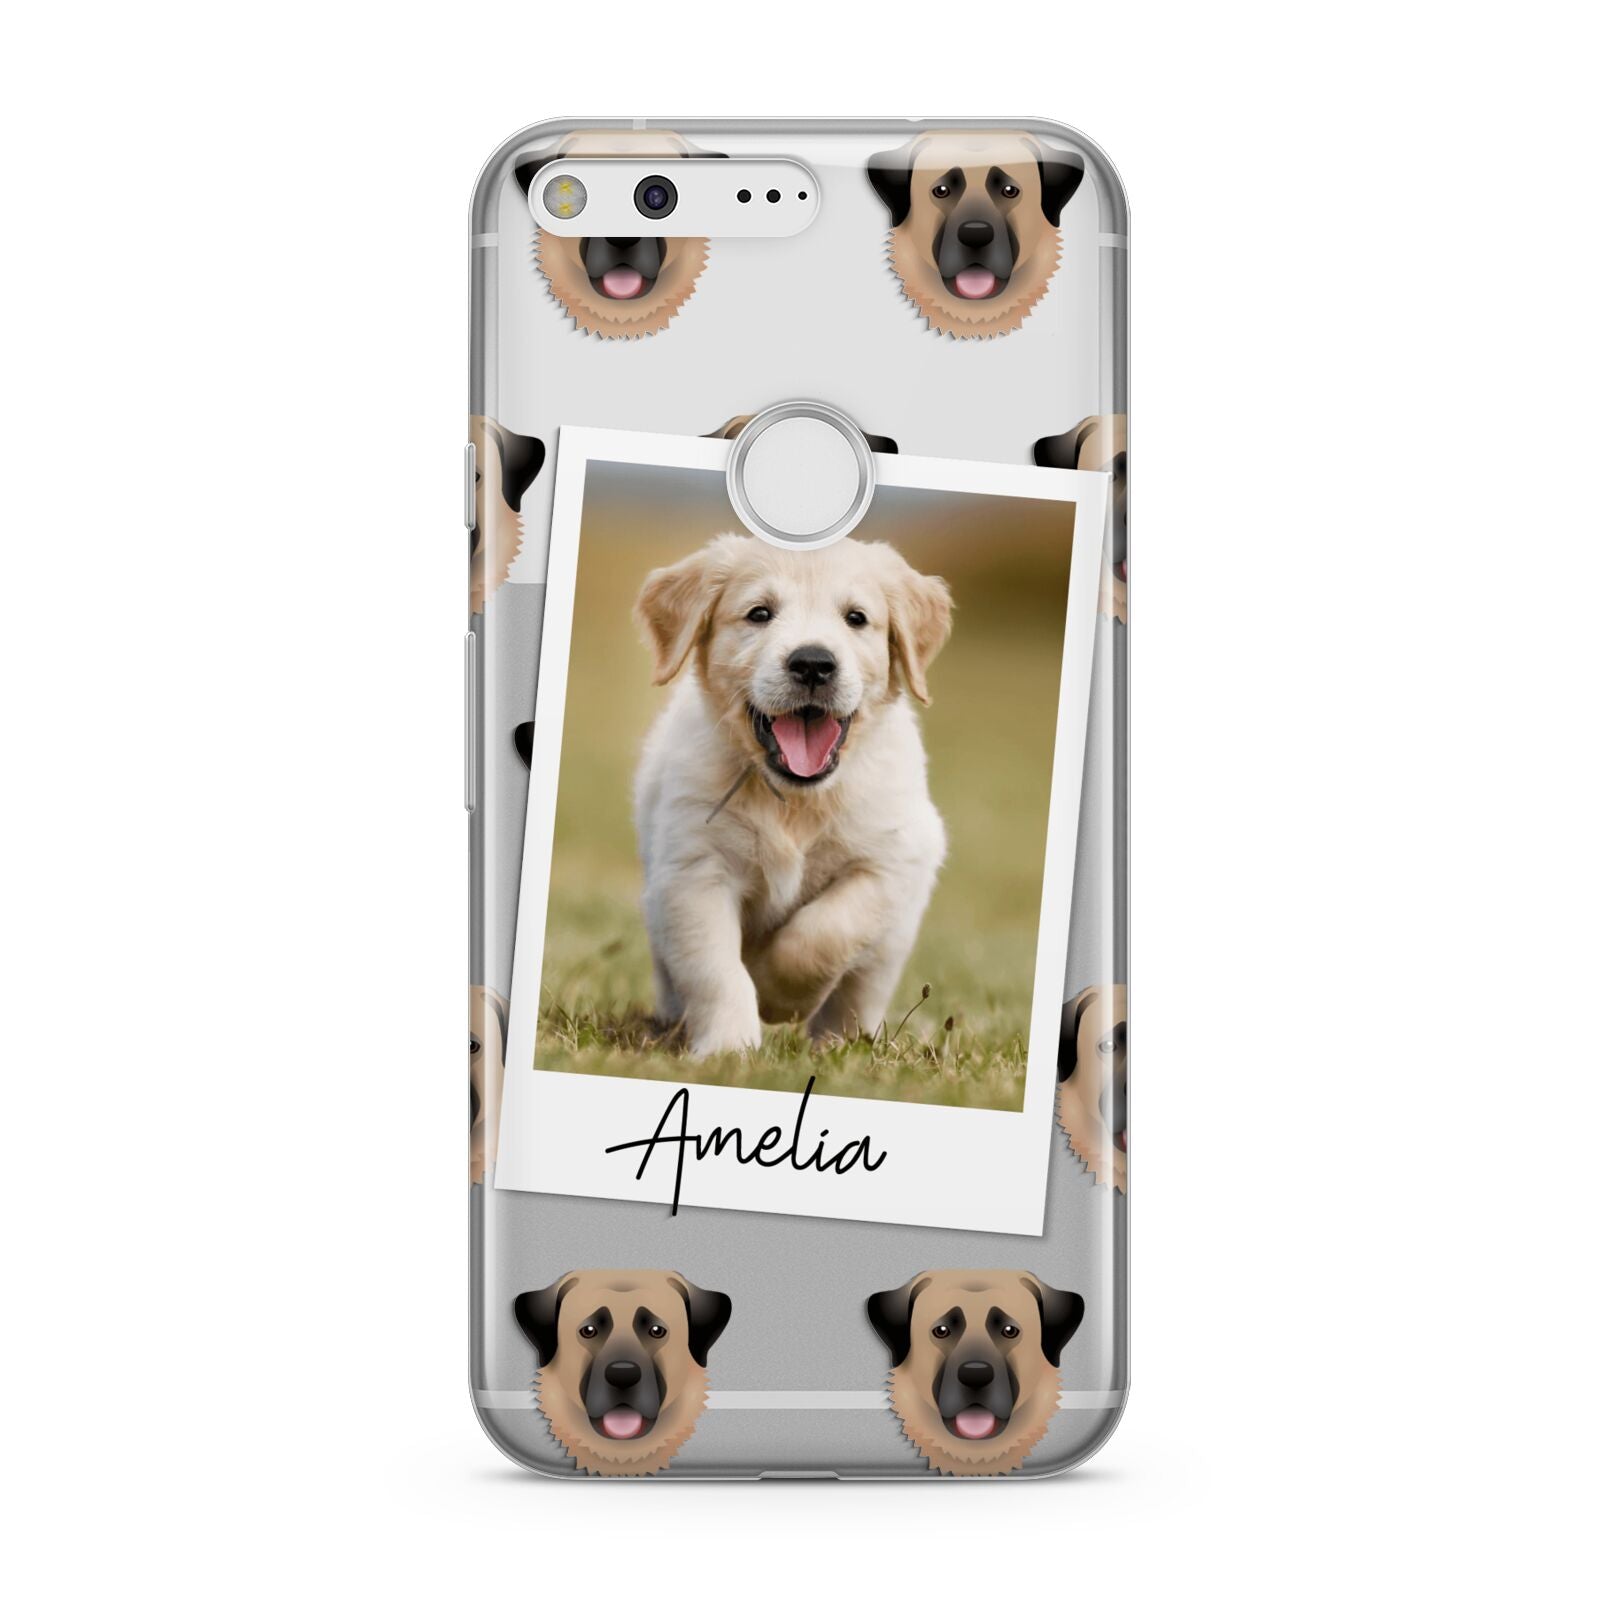 Personalised Dog Photo Google Pixel Case